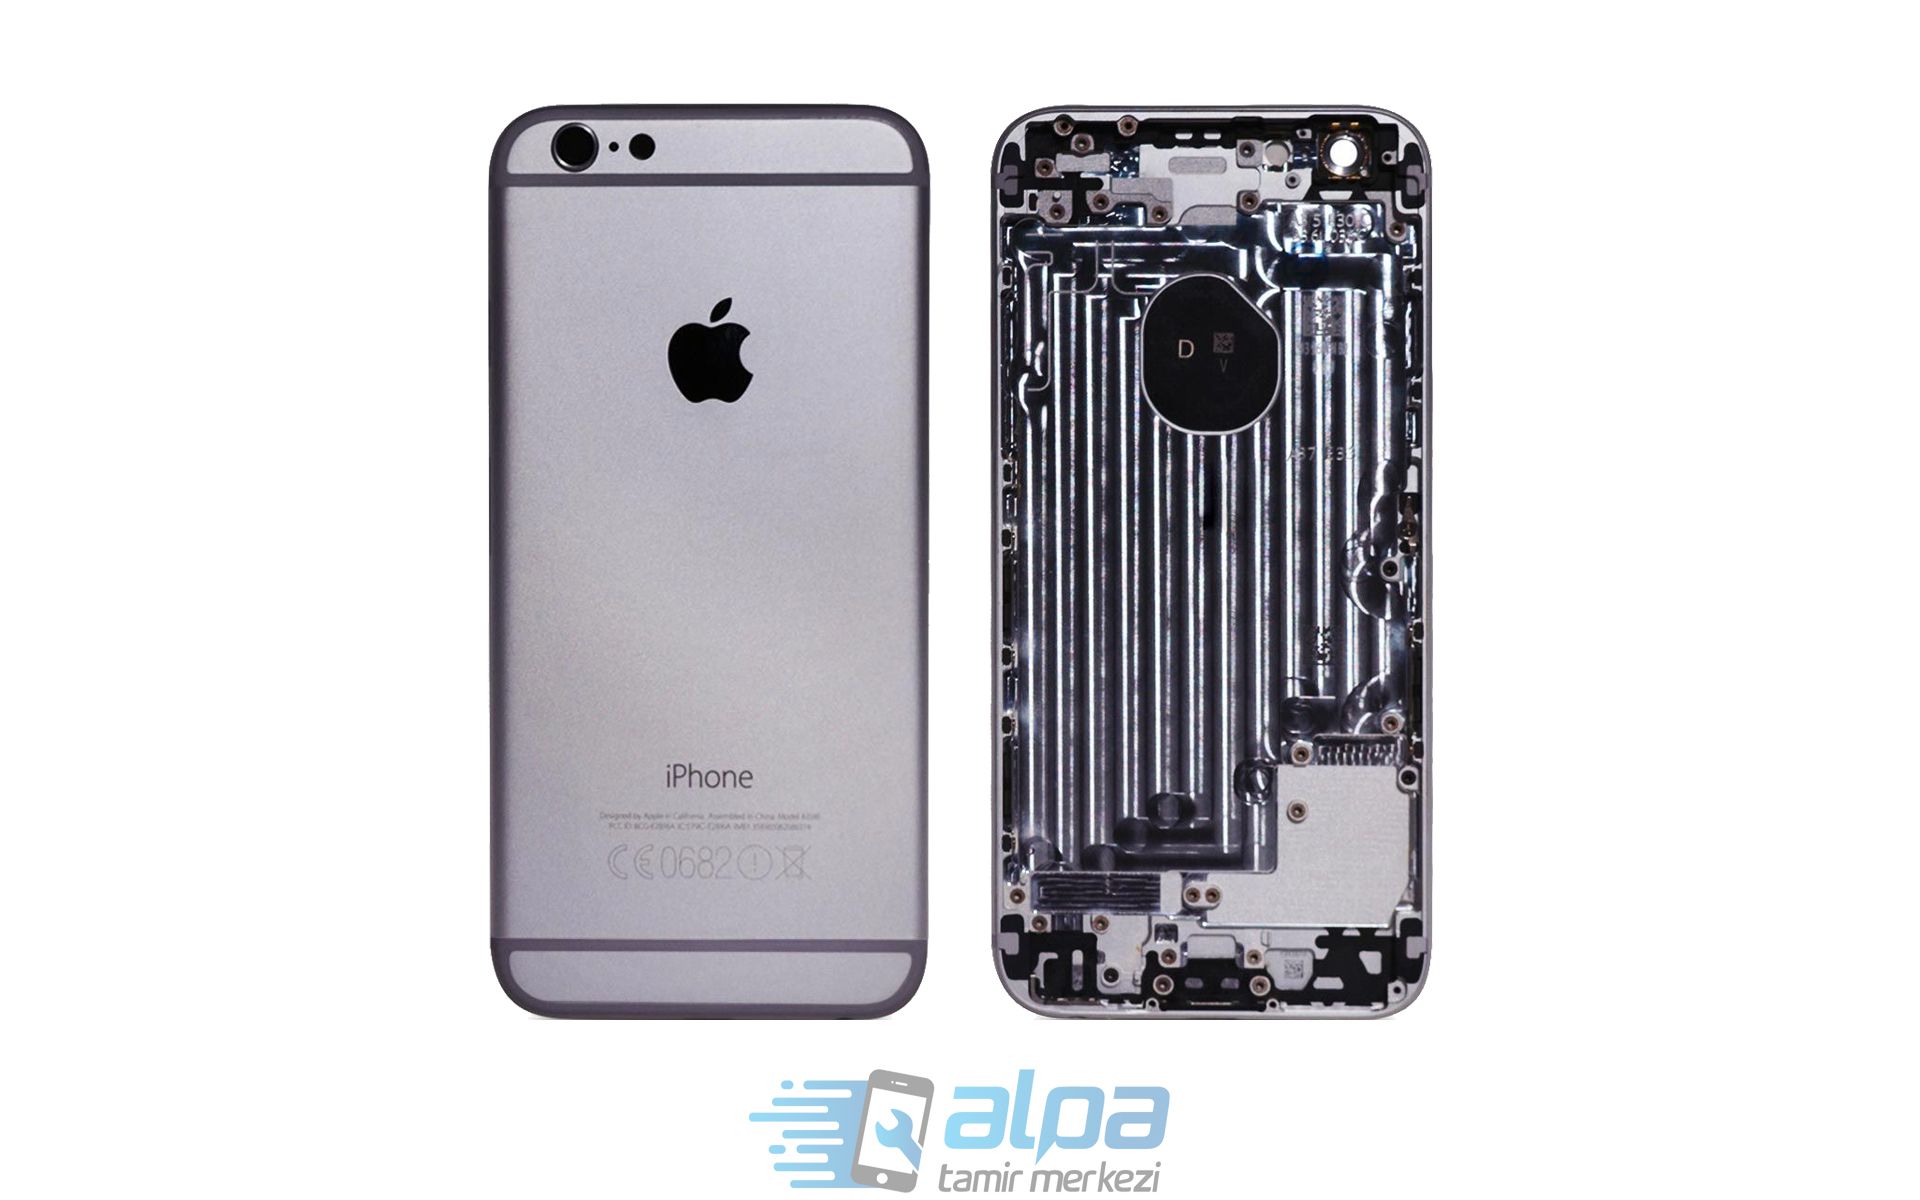 iPhone 6 Kasa Değişimi Fiyatı 799 TL